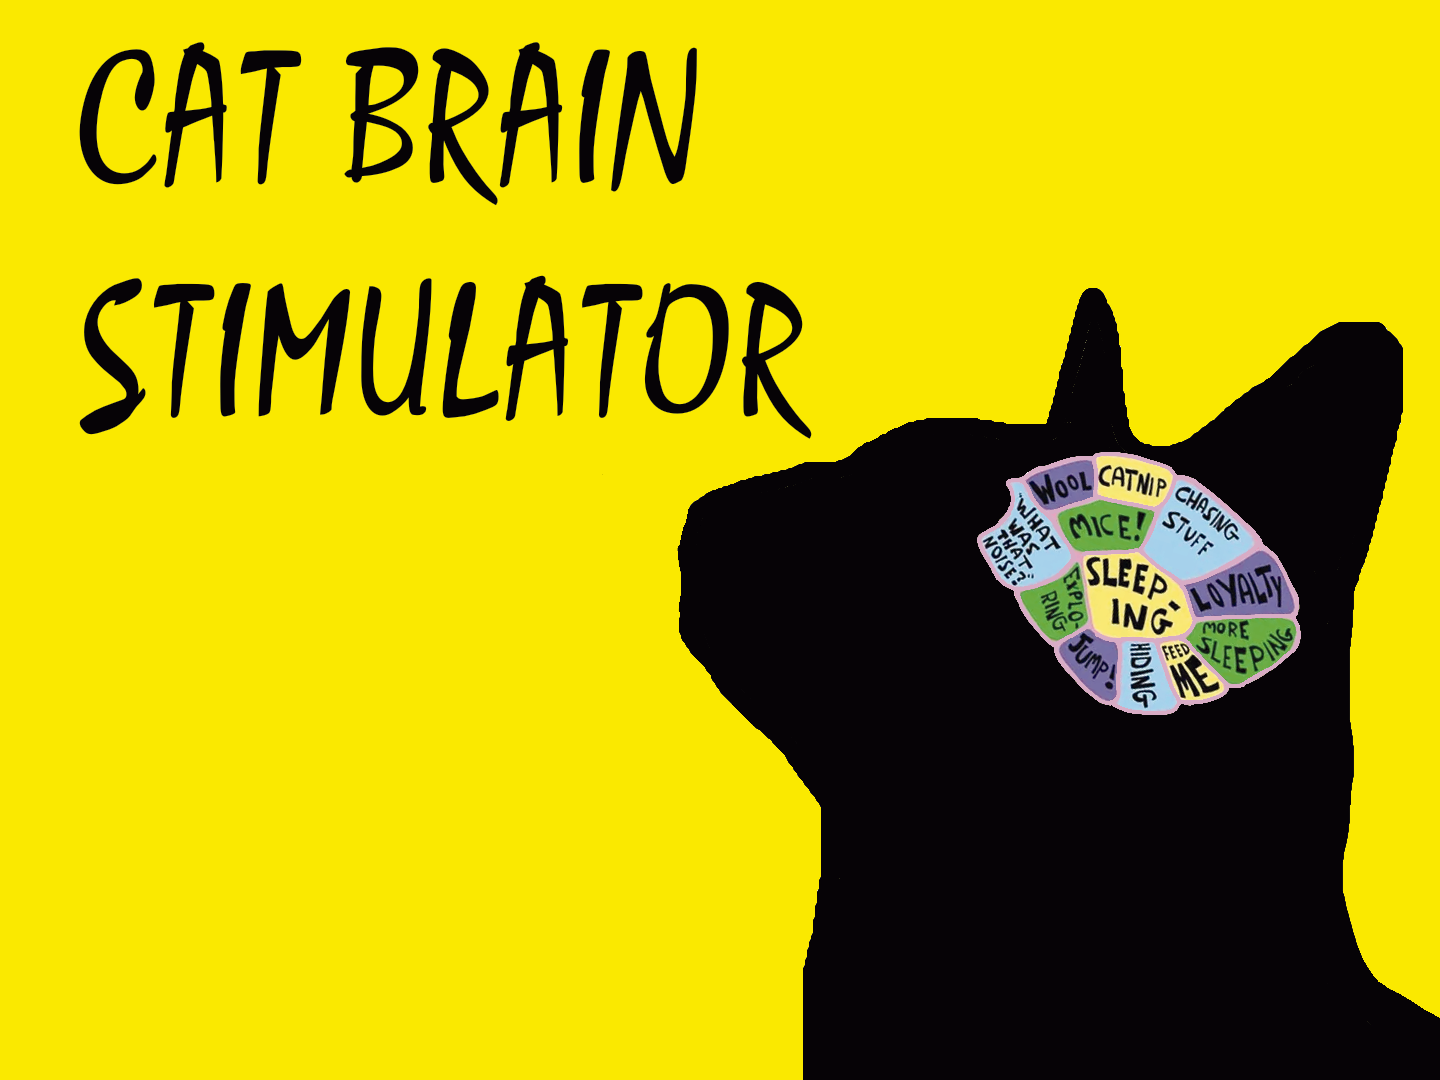 Cat Brain Stimulator